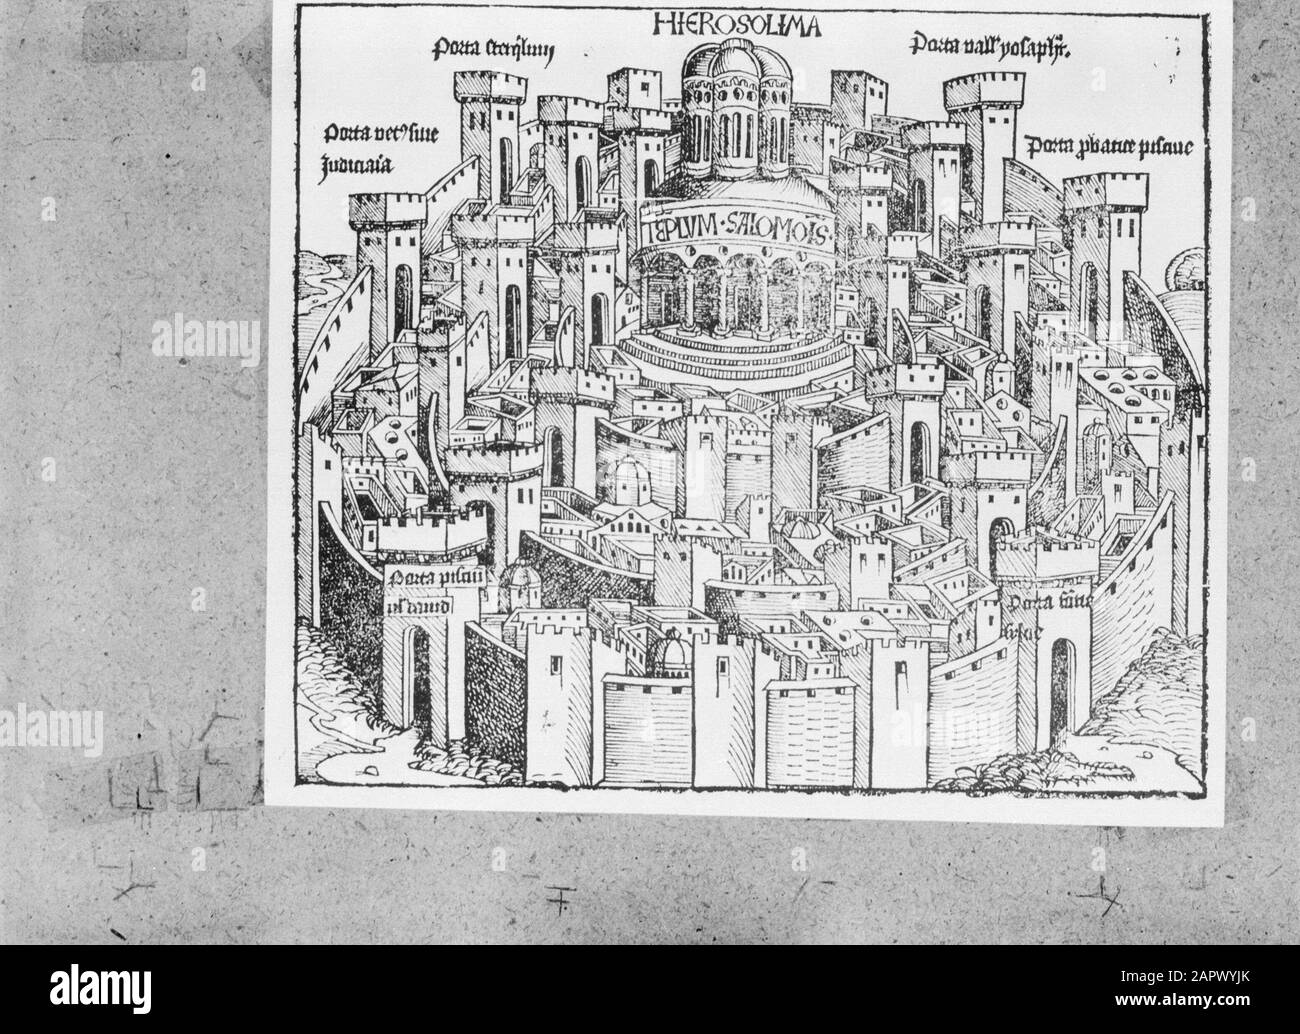 Gerusalemme Nell Arte La Vecchia Stampa Raffigurante La Citta Di Gerusalemme Con Edifici E Mura Disegnate